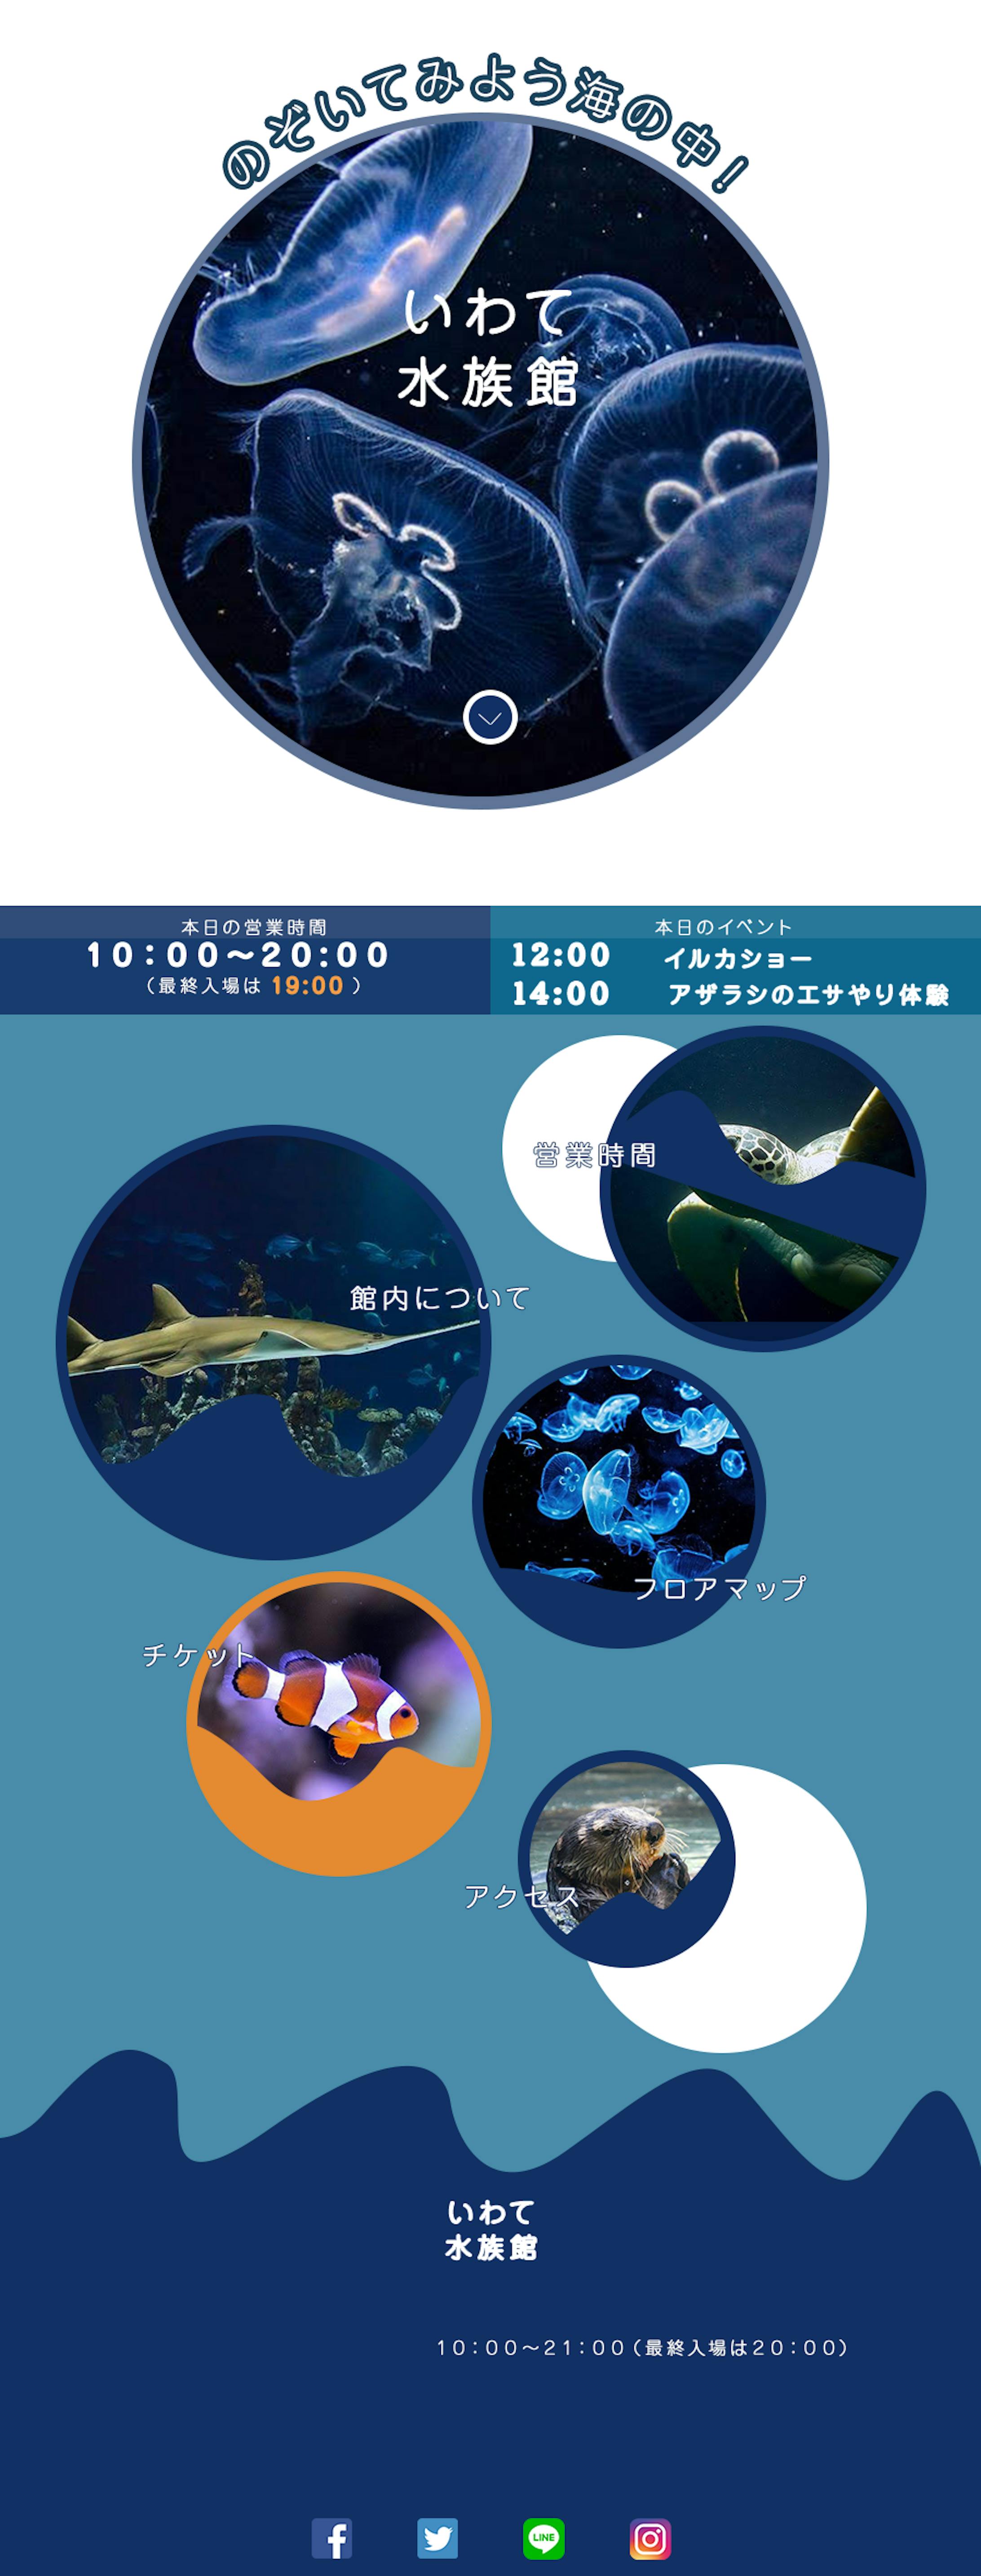 【2020.03】水族館のサイト-9